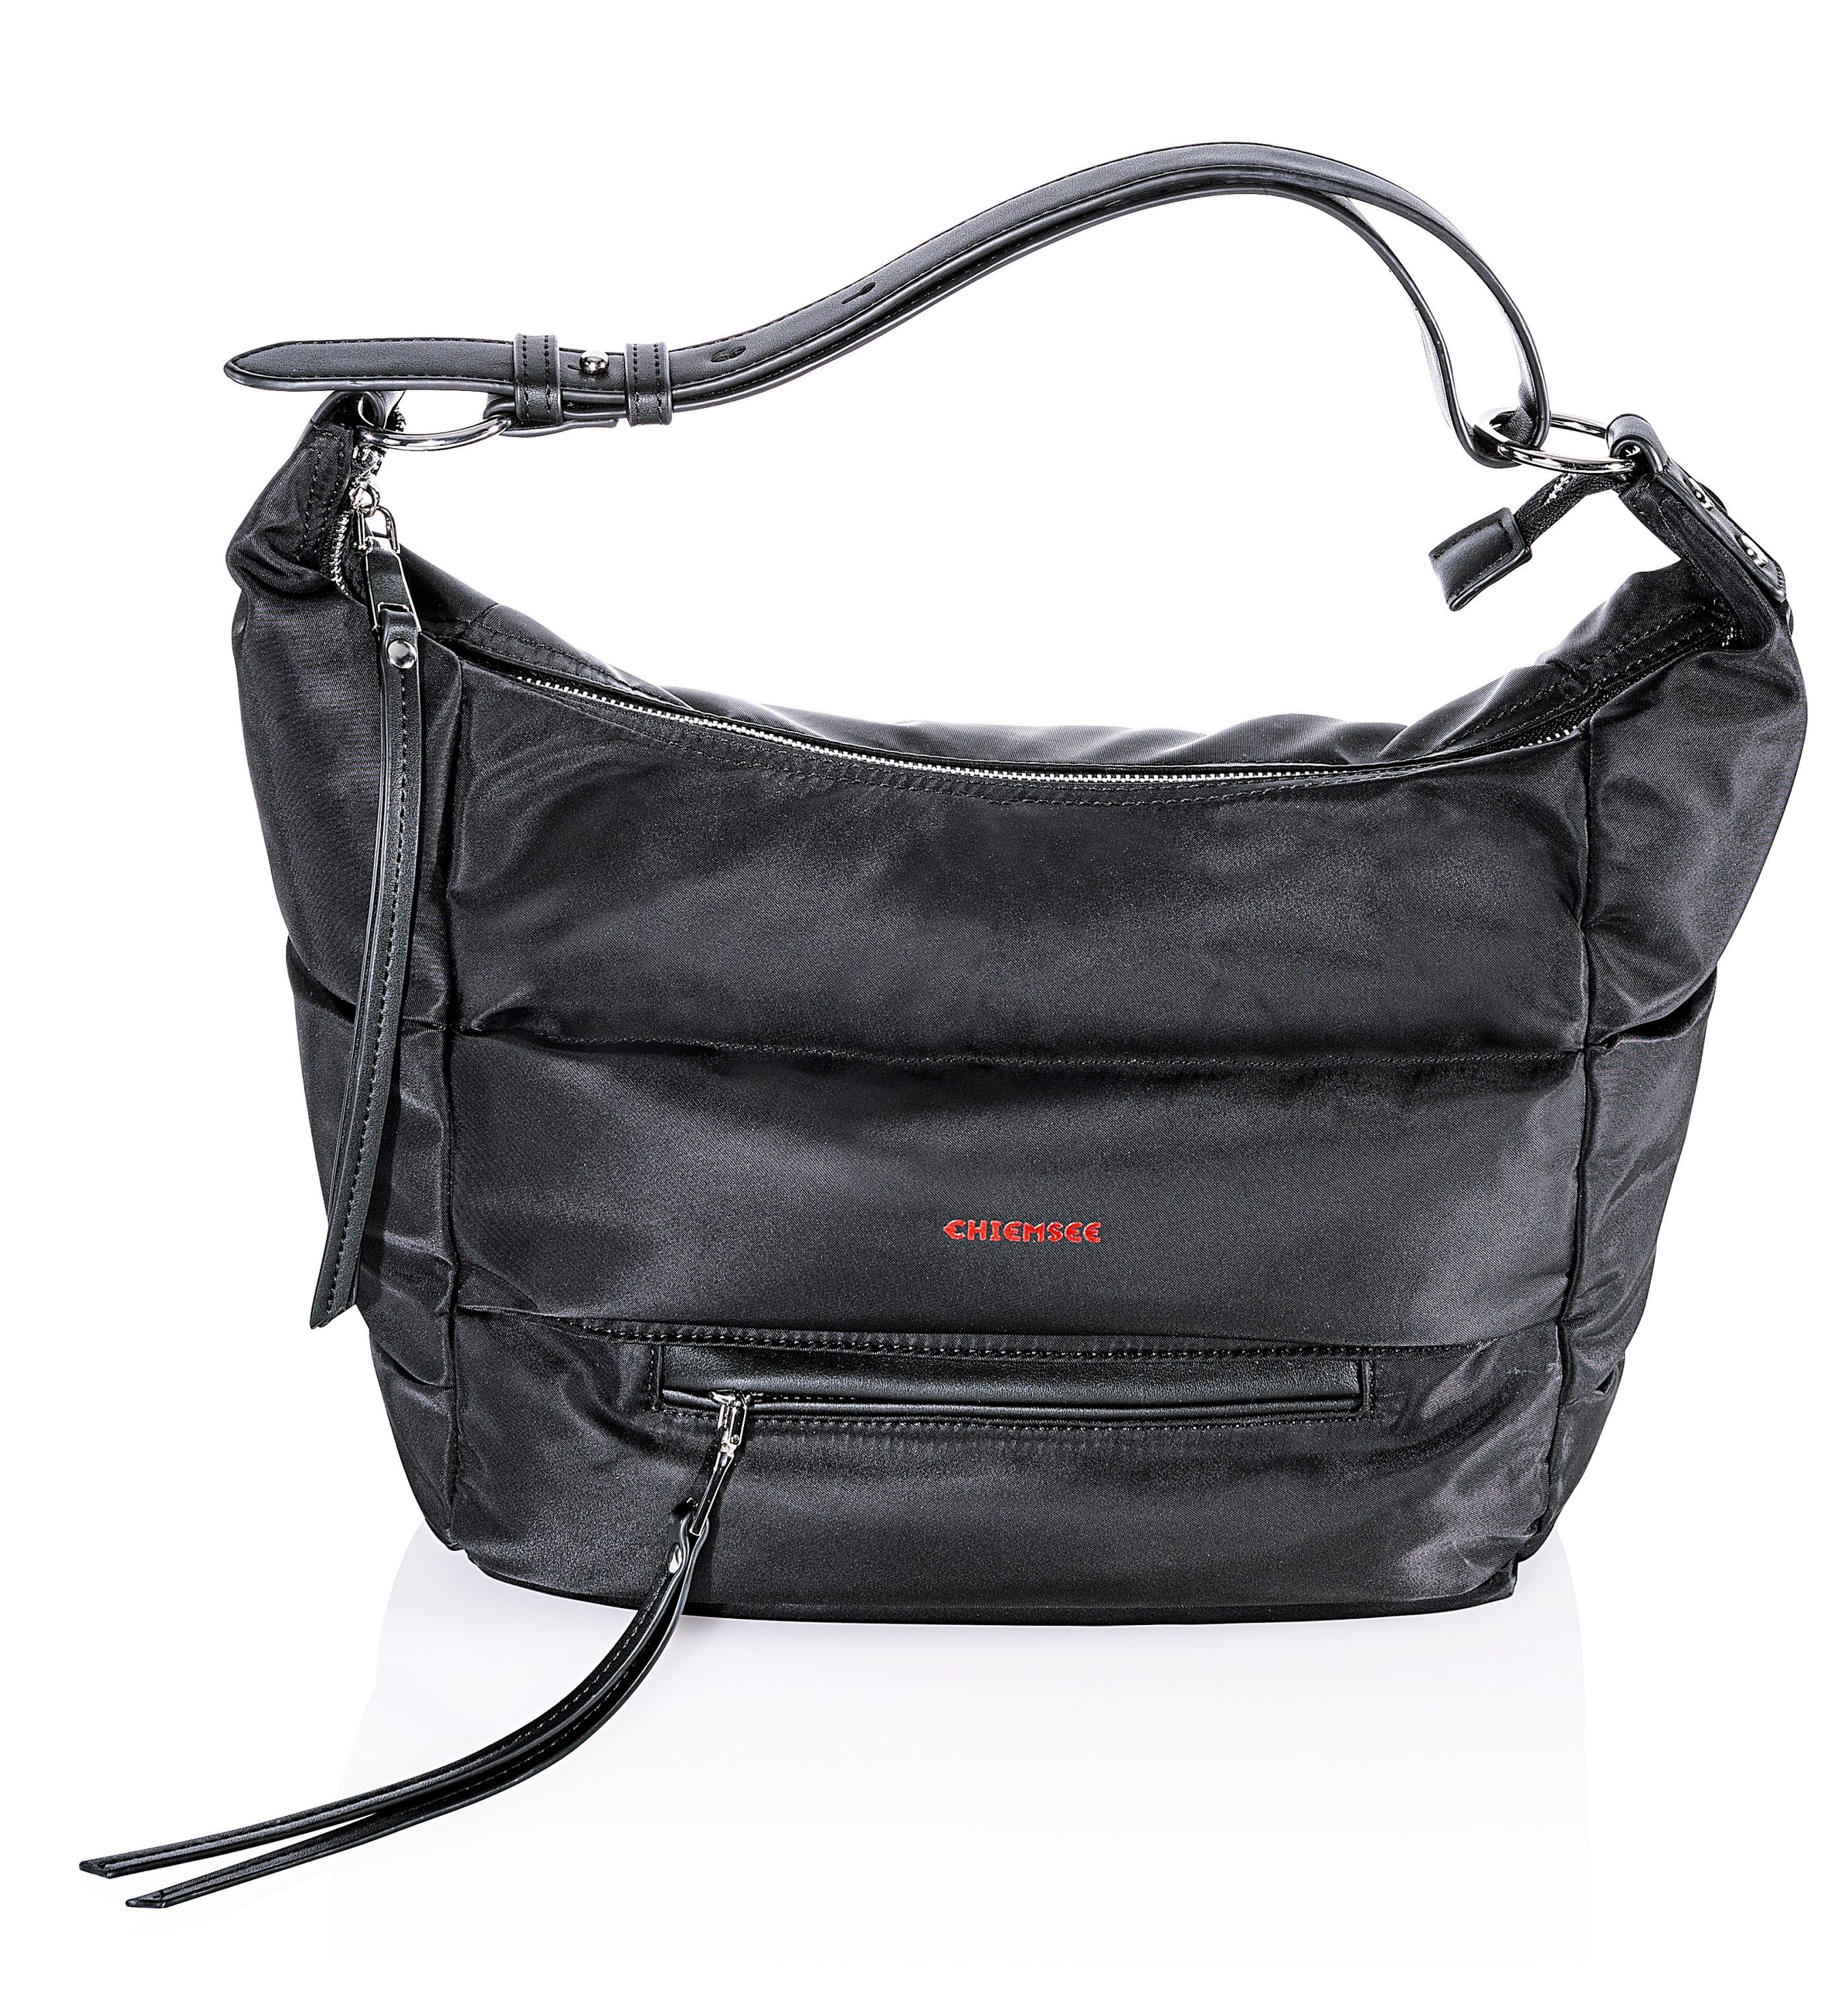 Chiemsee Damen Tasche Farbe: schwarz bestellen | Weltbild.ch